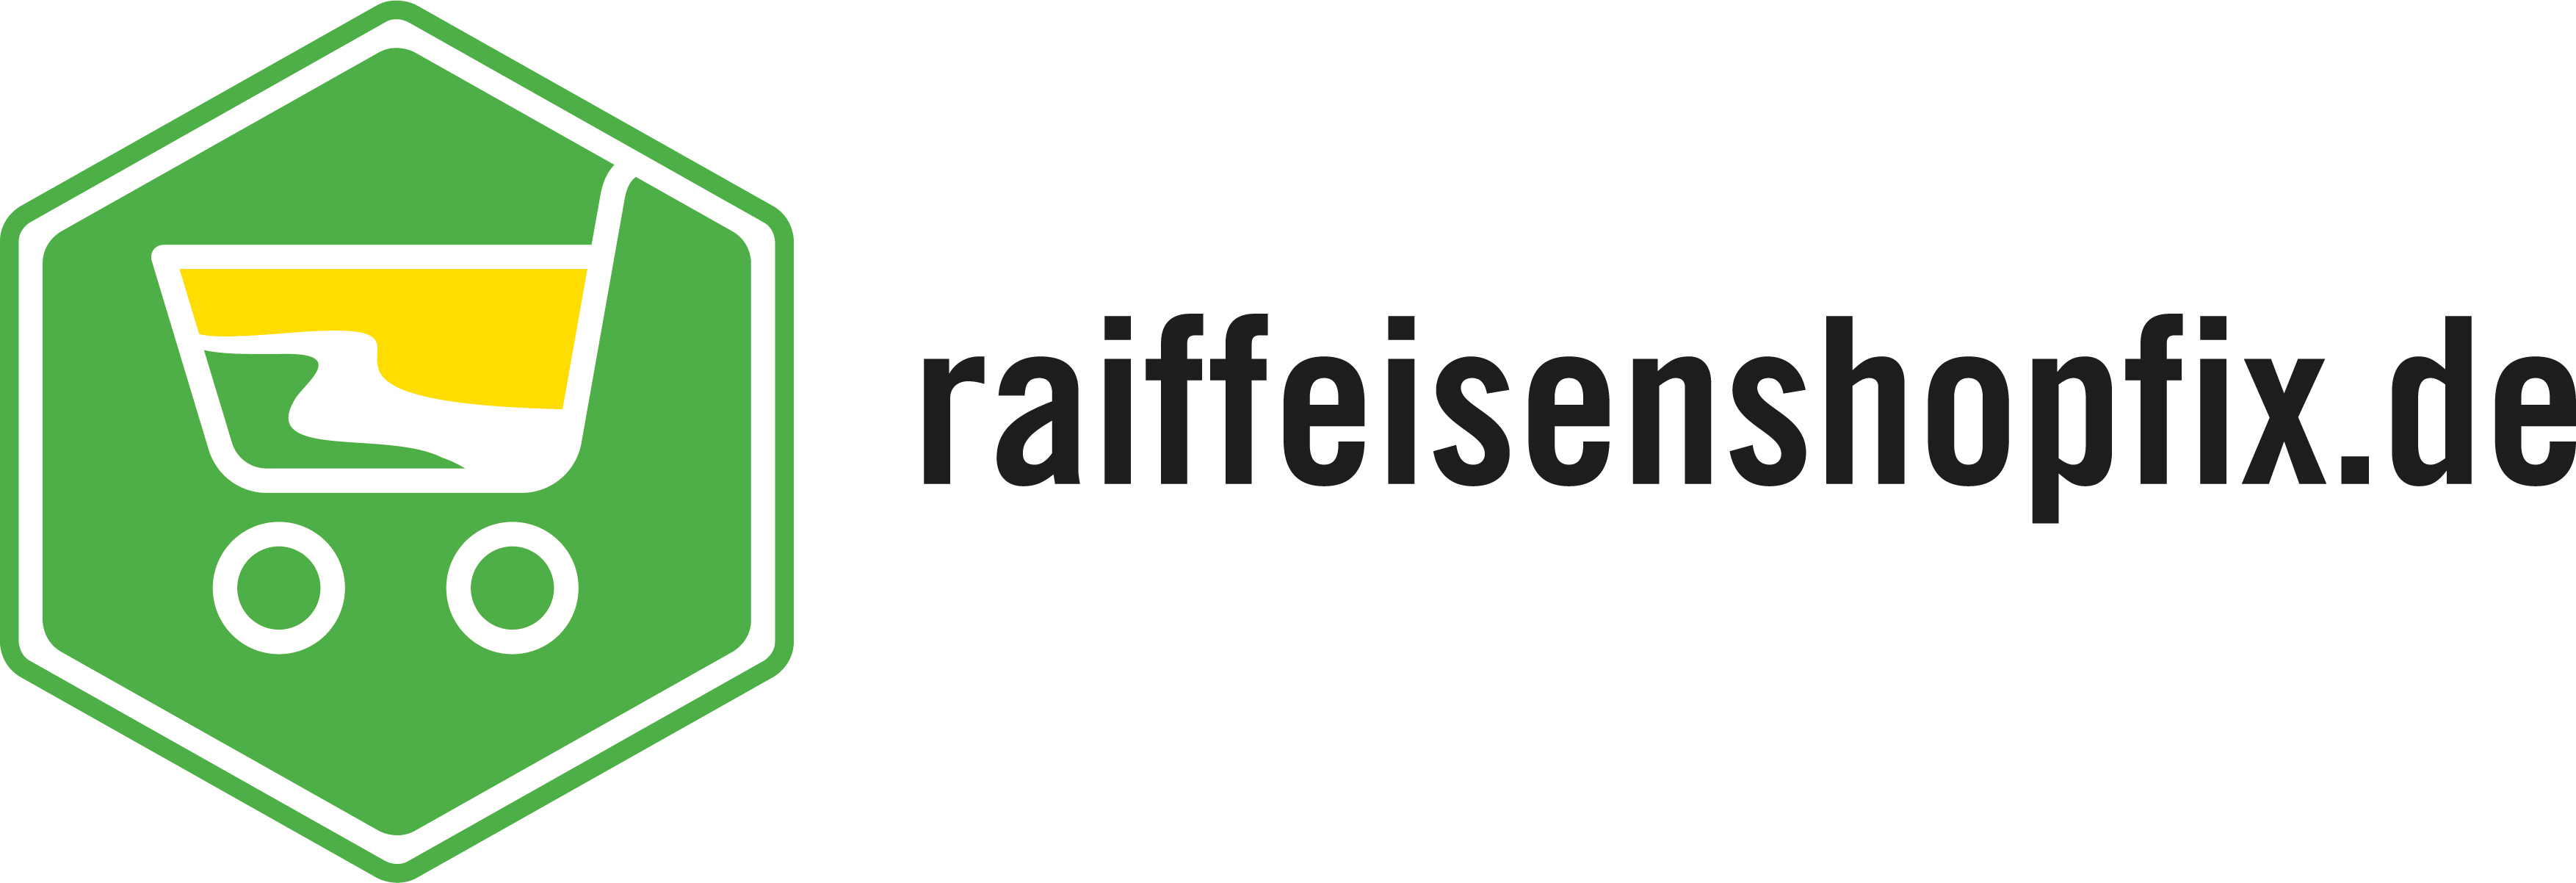 (c) Raiffeisenshopfix.de